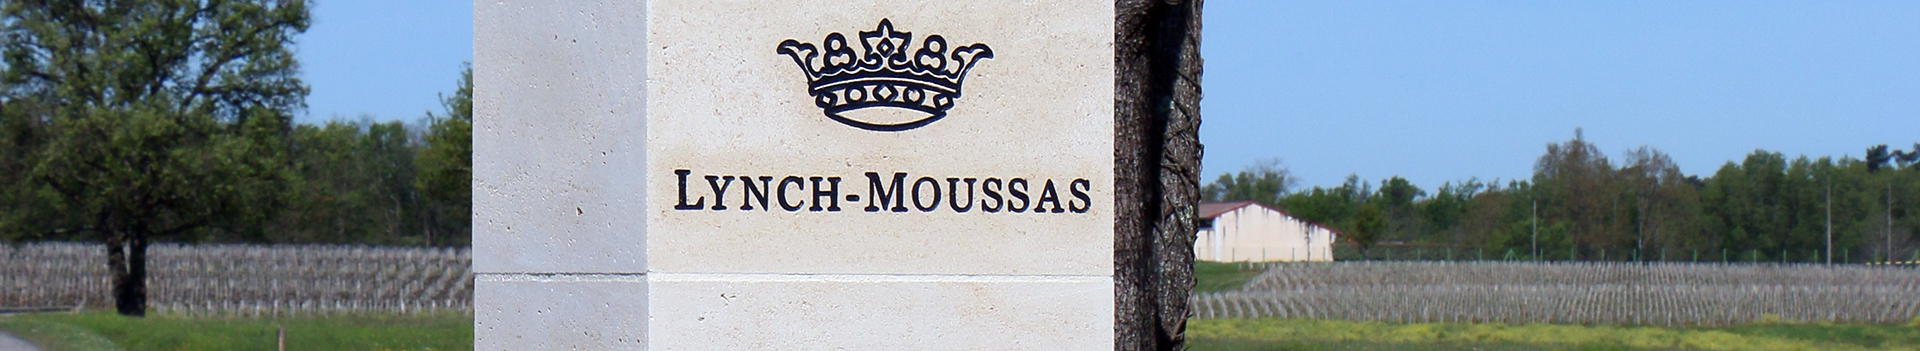 D-Chateau_Lynch-Moussas